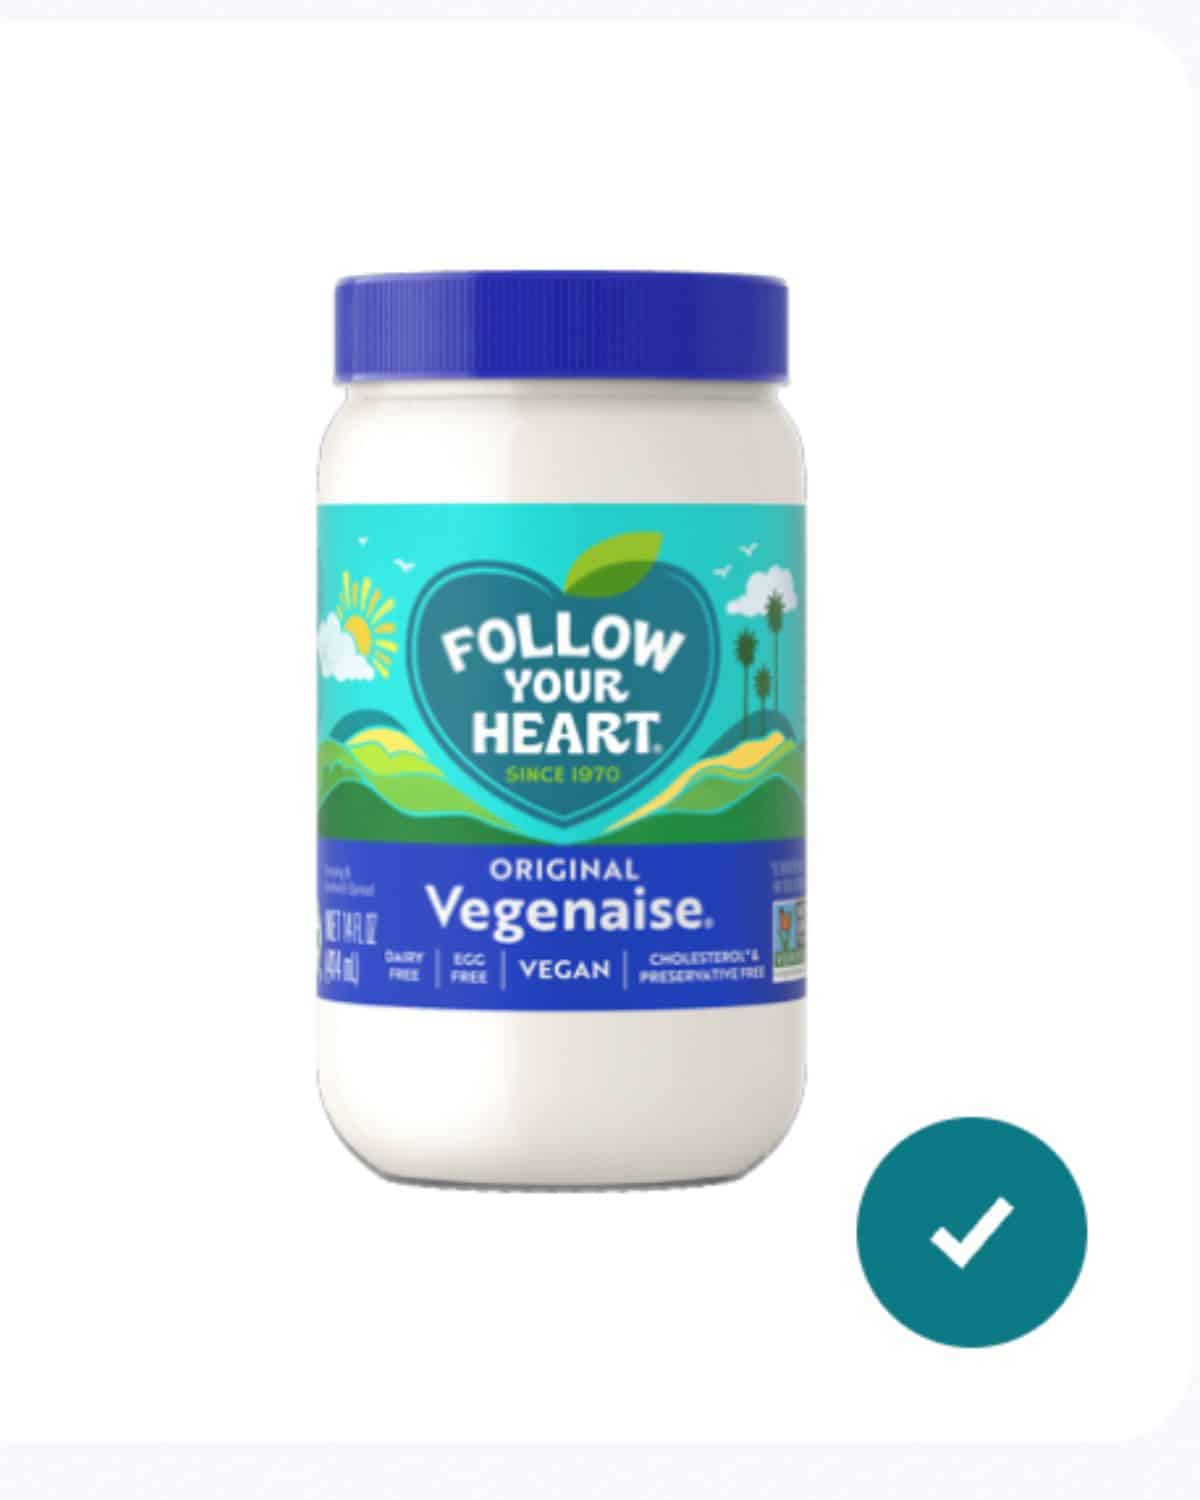 Follow your heart mayonnaise.